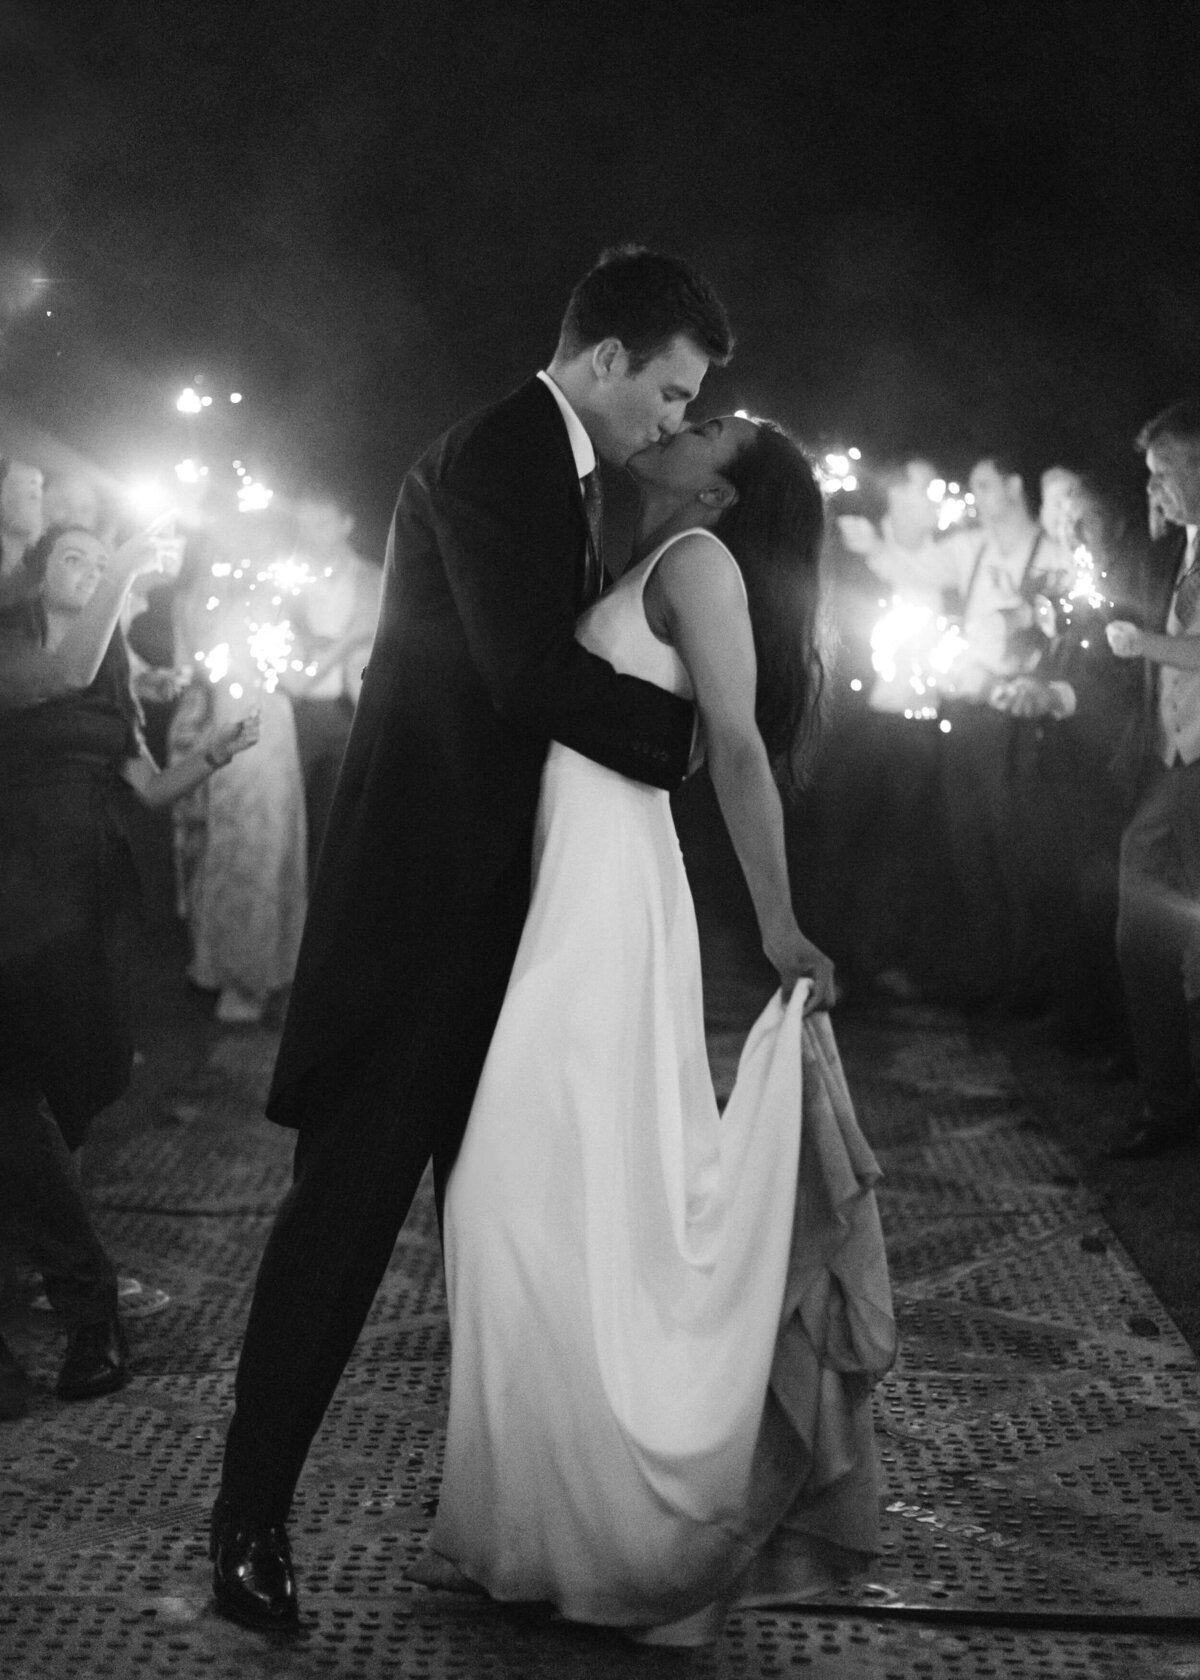 chloe-winstanley-weddings-sparklers-bride-groom-kiss